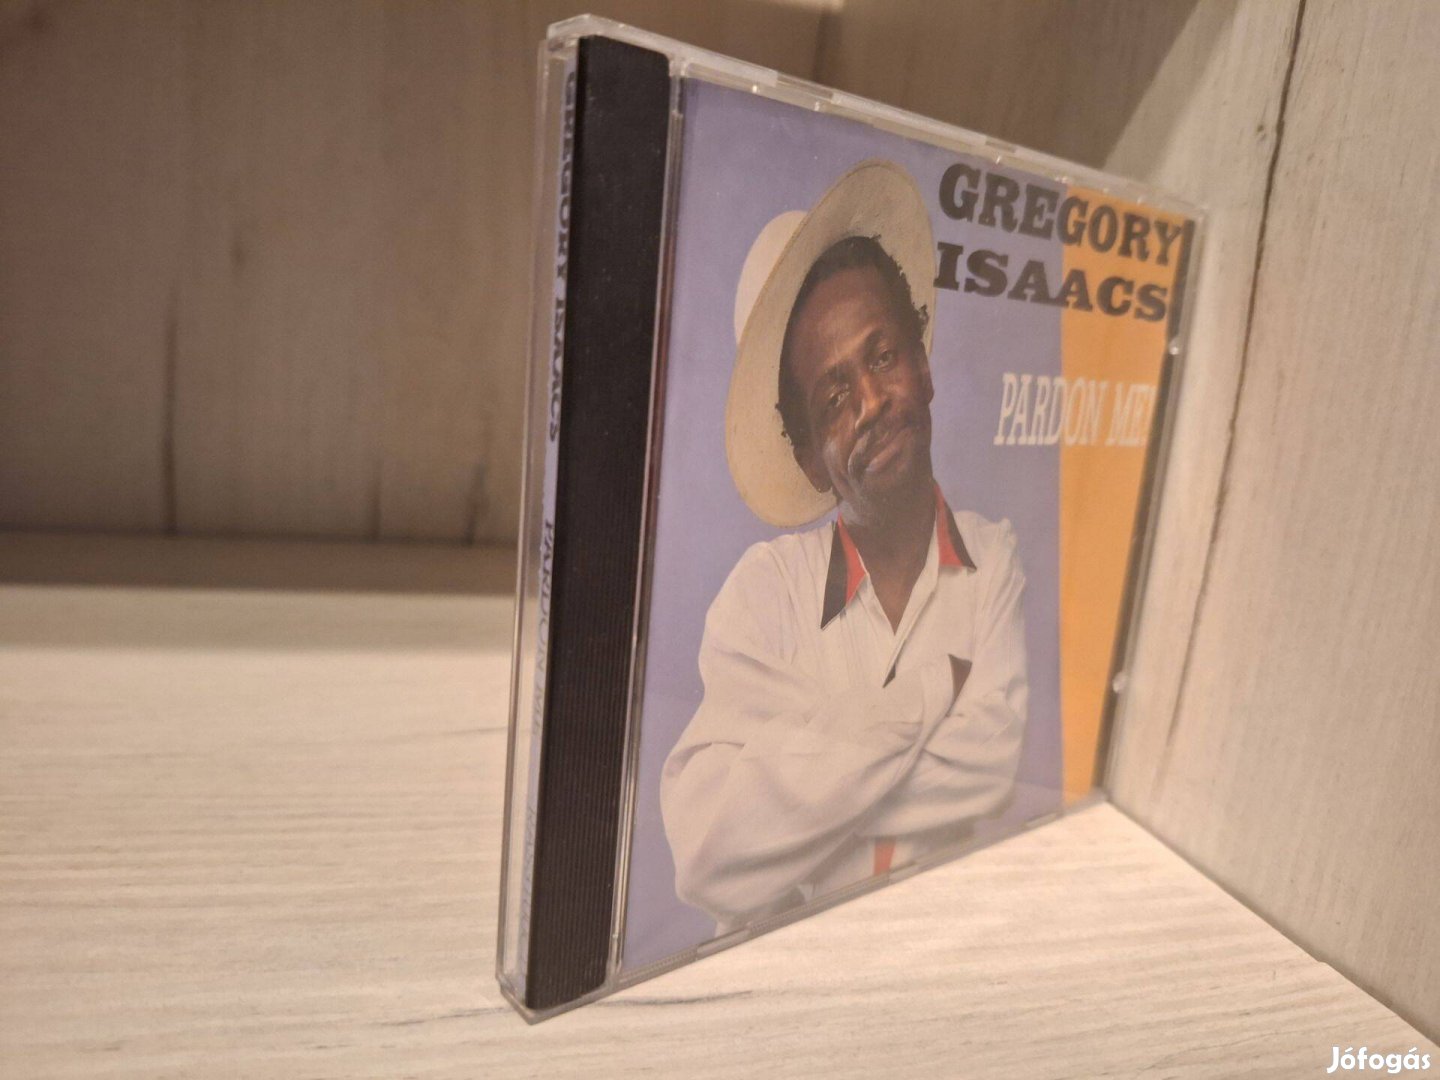 Gregory Isaacs - Pardon Me! CD